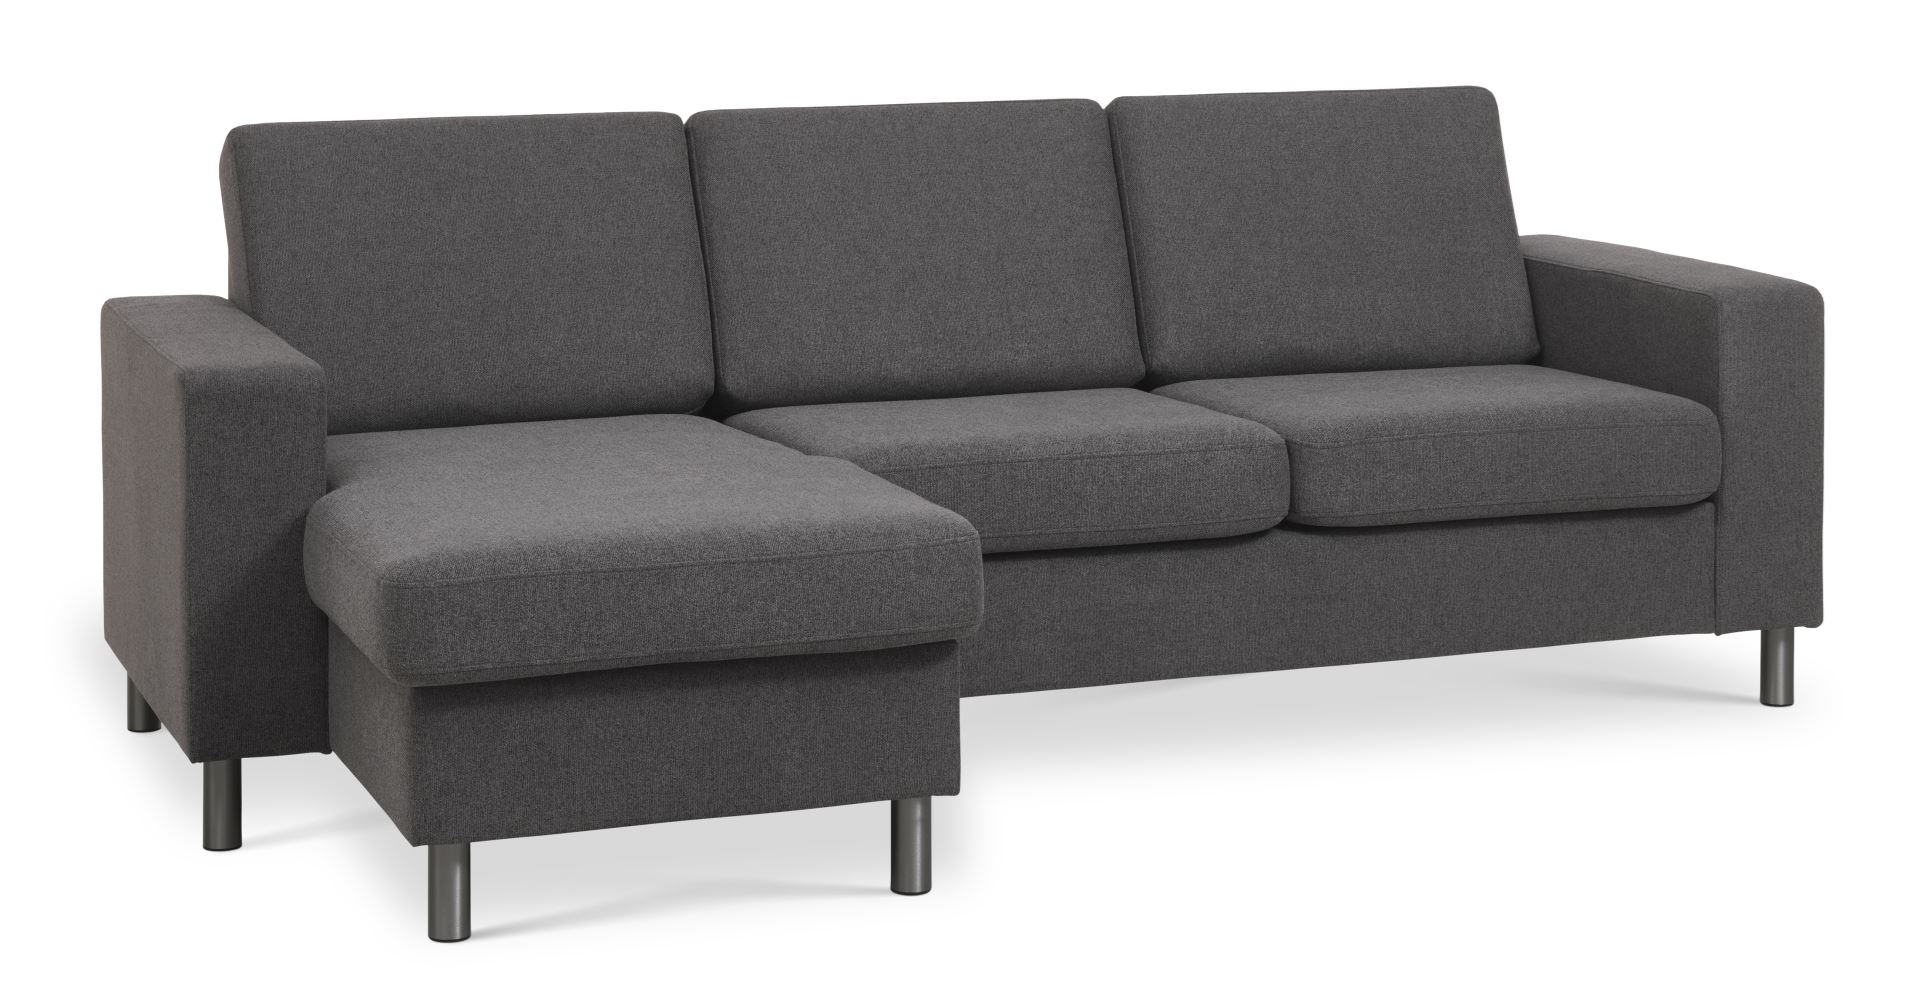 Pan set 1 3D sofa med chaiselong - antracitgrå polyester stof og børstet aluminium